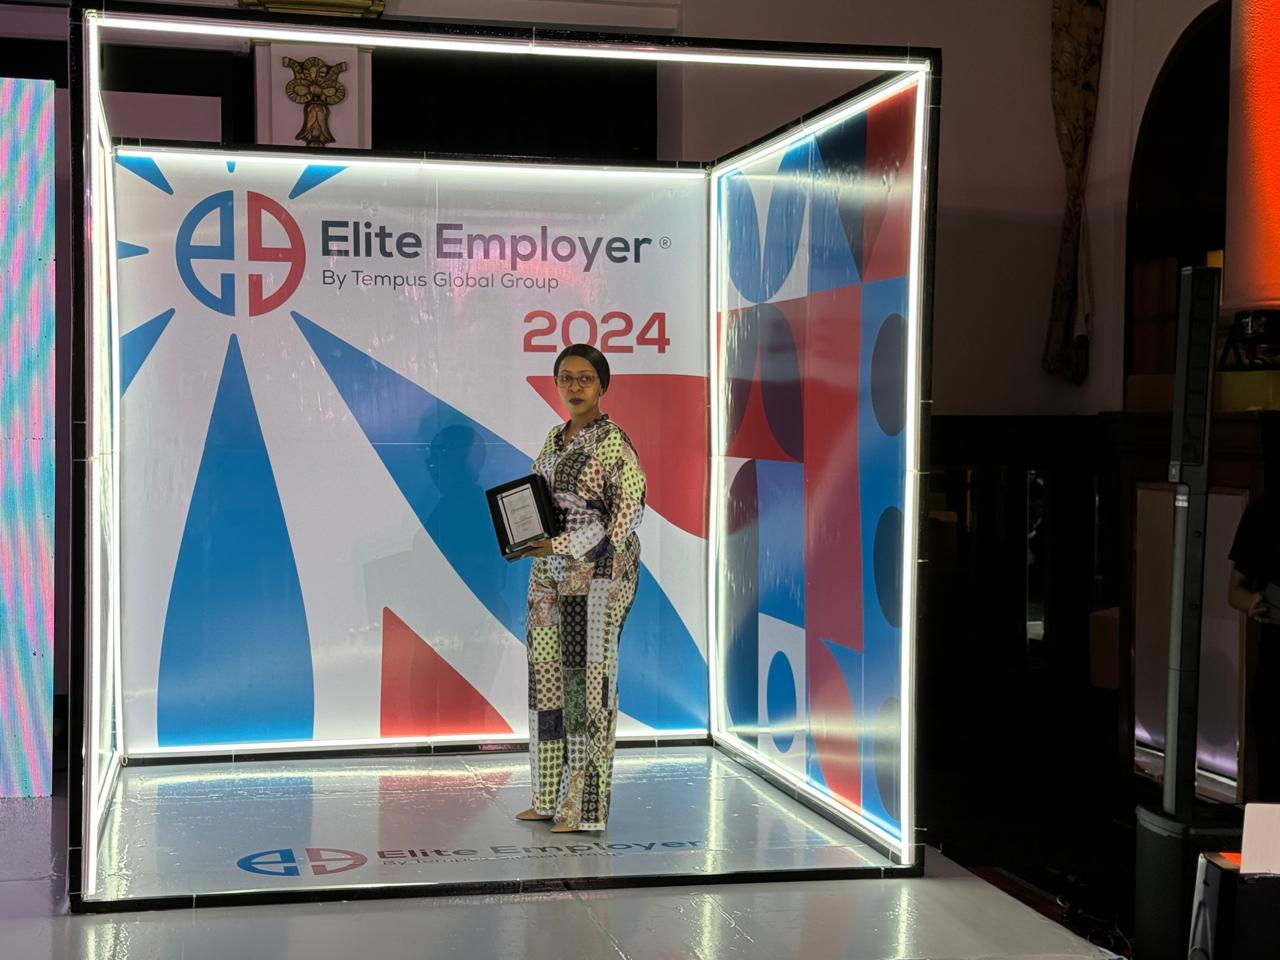 Cleide receives the Elite Employer Award on Behalf of APOPO